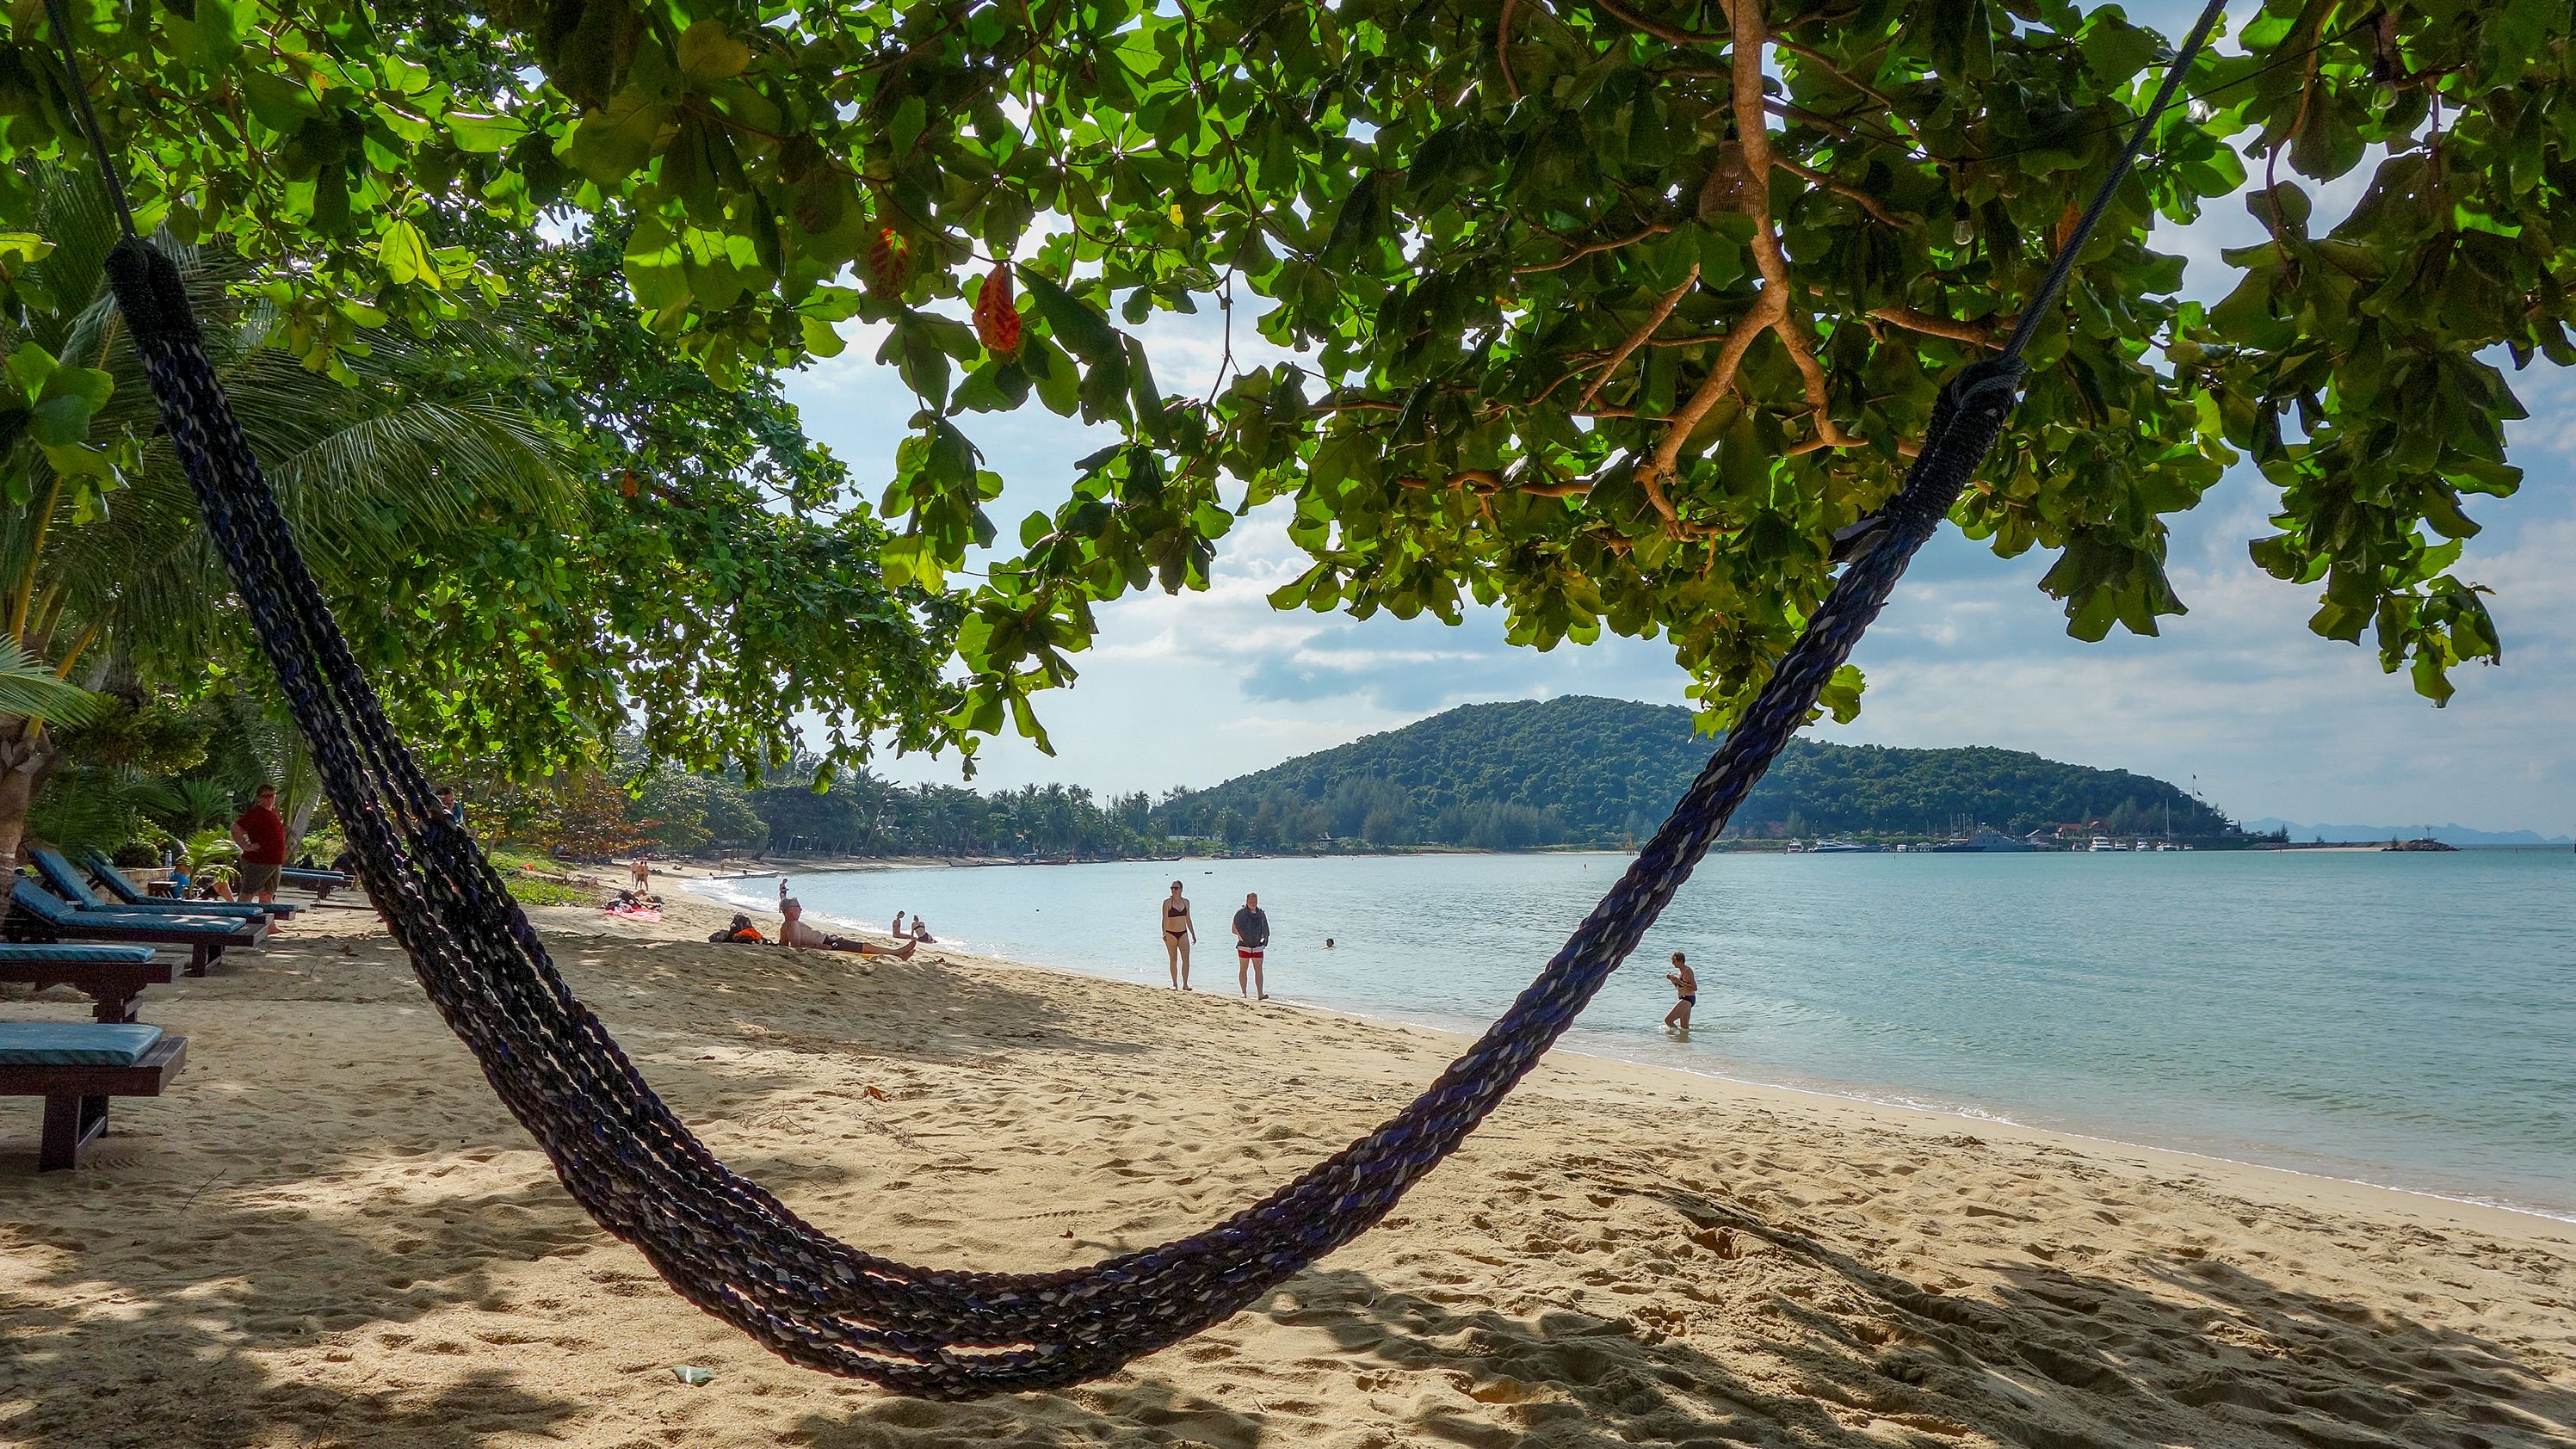 11 December 2019, Thailand, Koh Samui: An empty hammock on a beach.